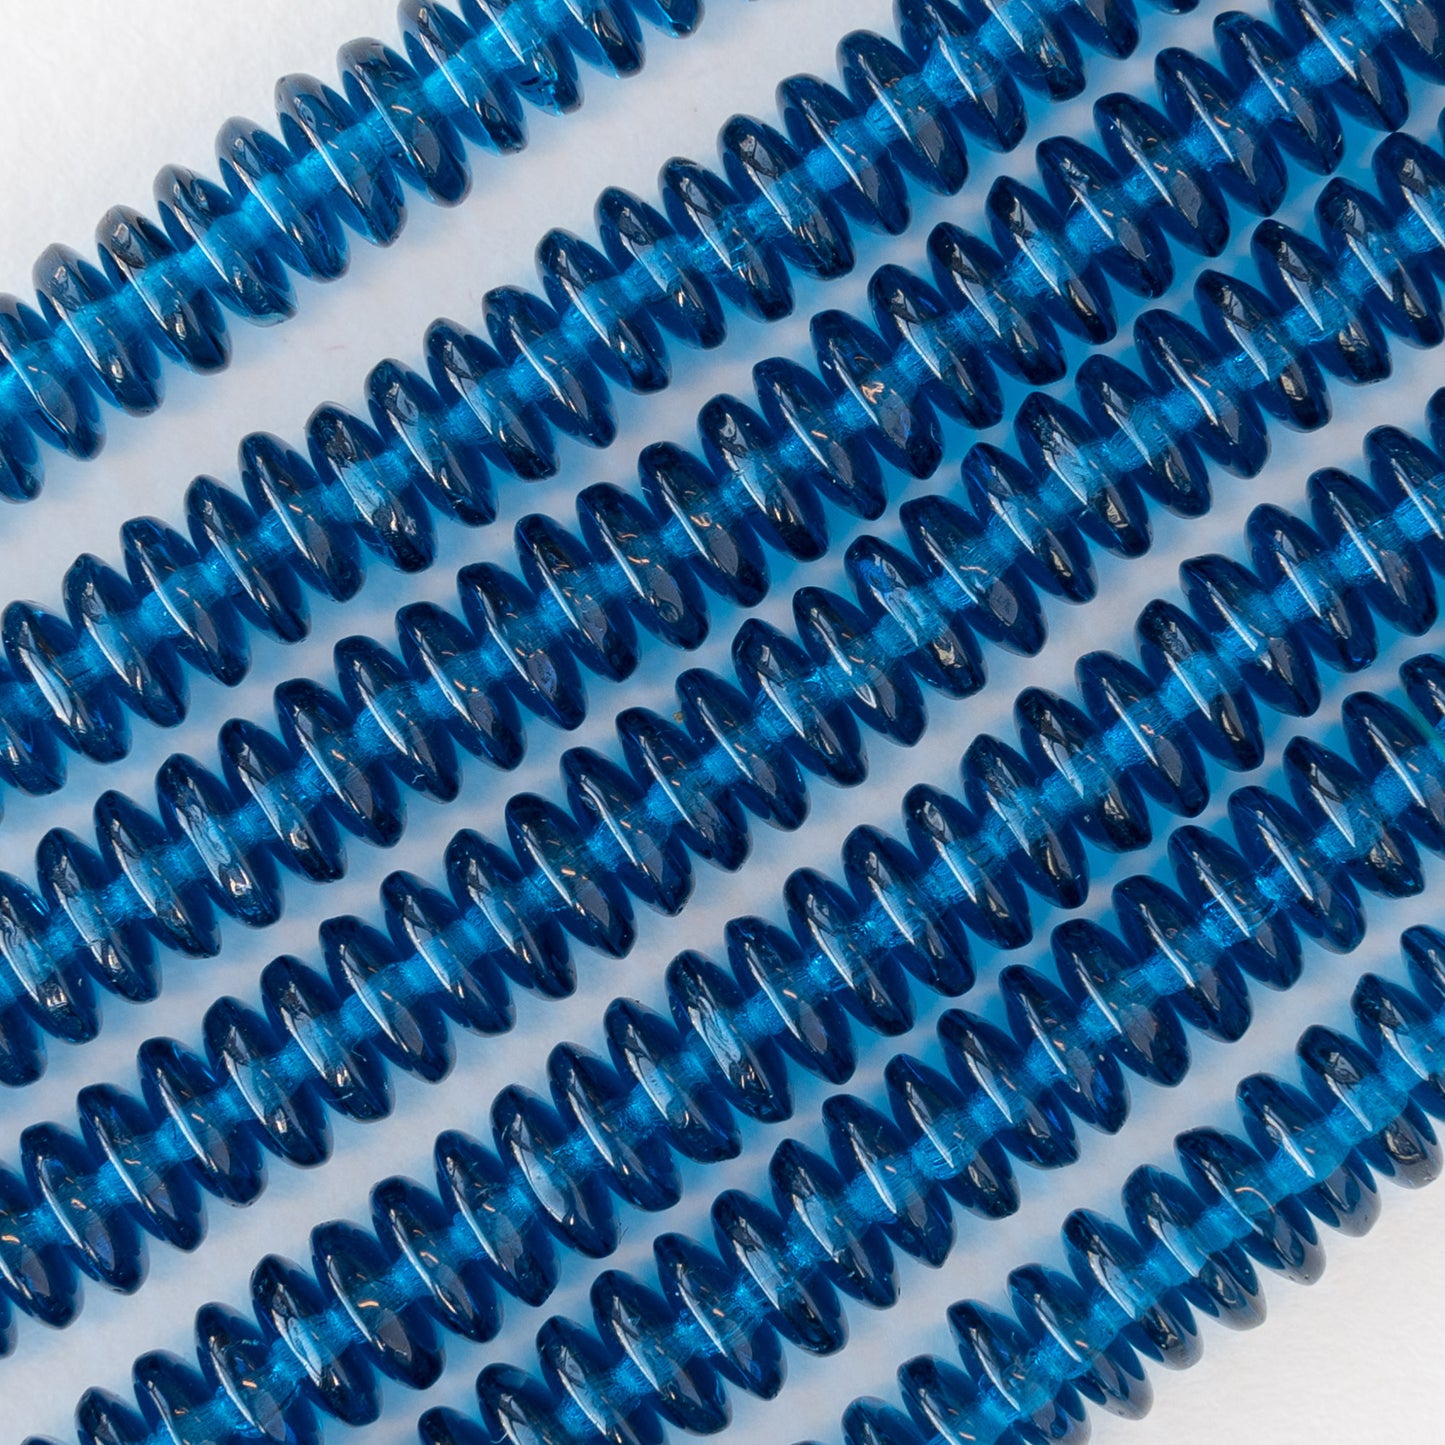 6mm Rondelle Beads - Capri Blue - 100 Beads